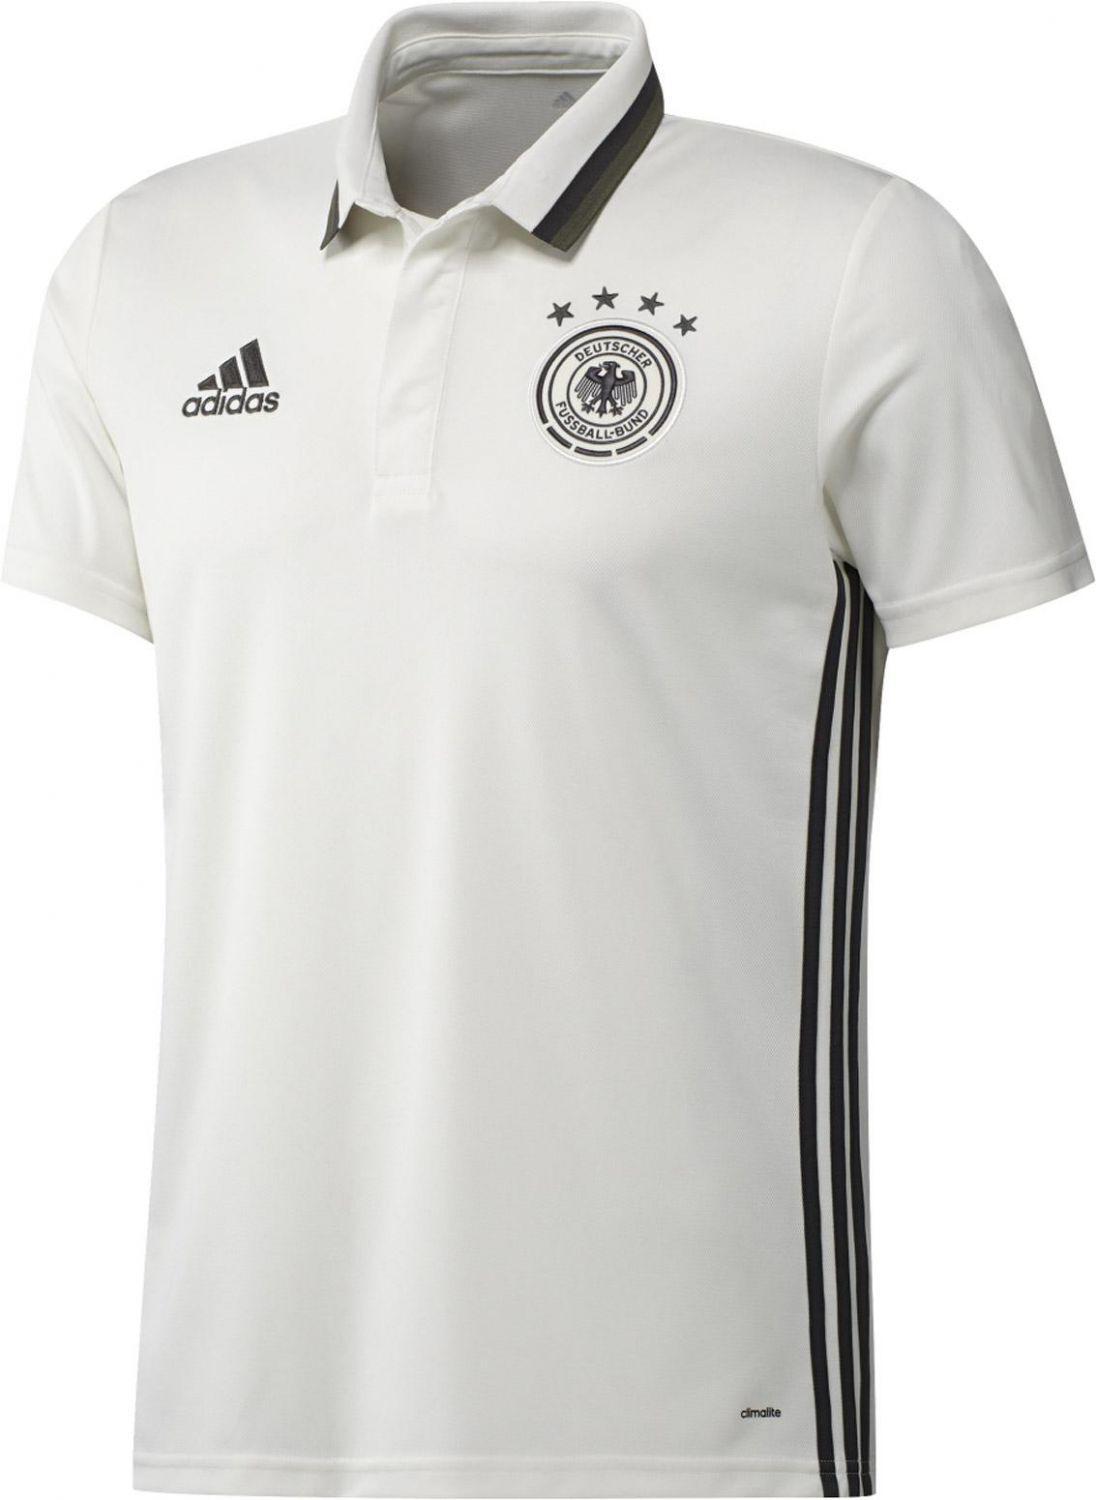 adidas DFB Poloshirt EM 2016